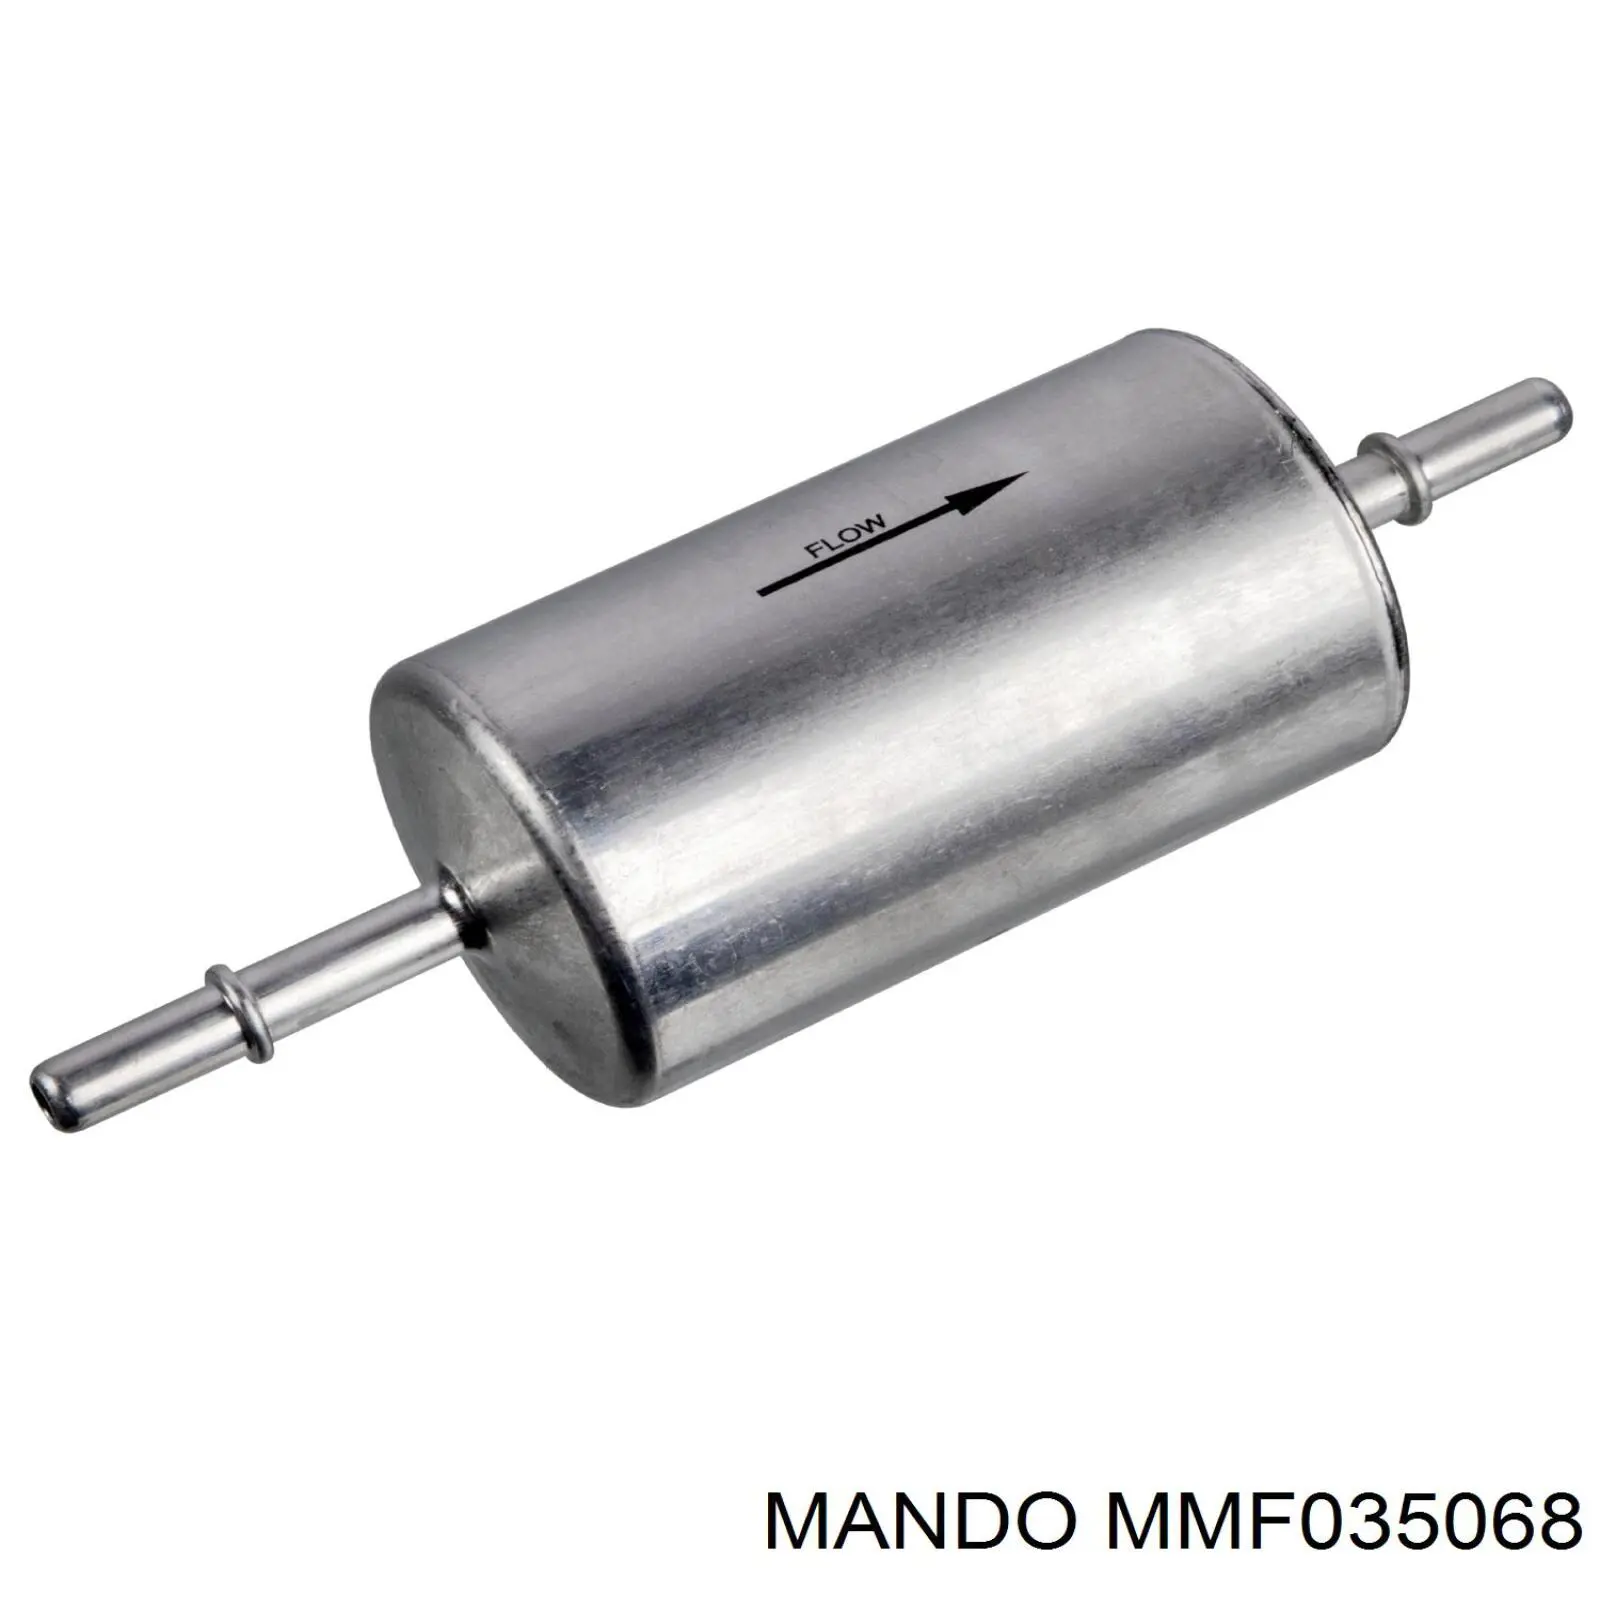 MMF035068 Mando фільтр паливний